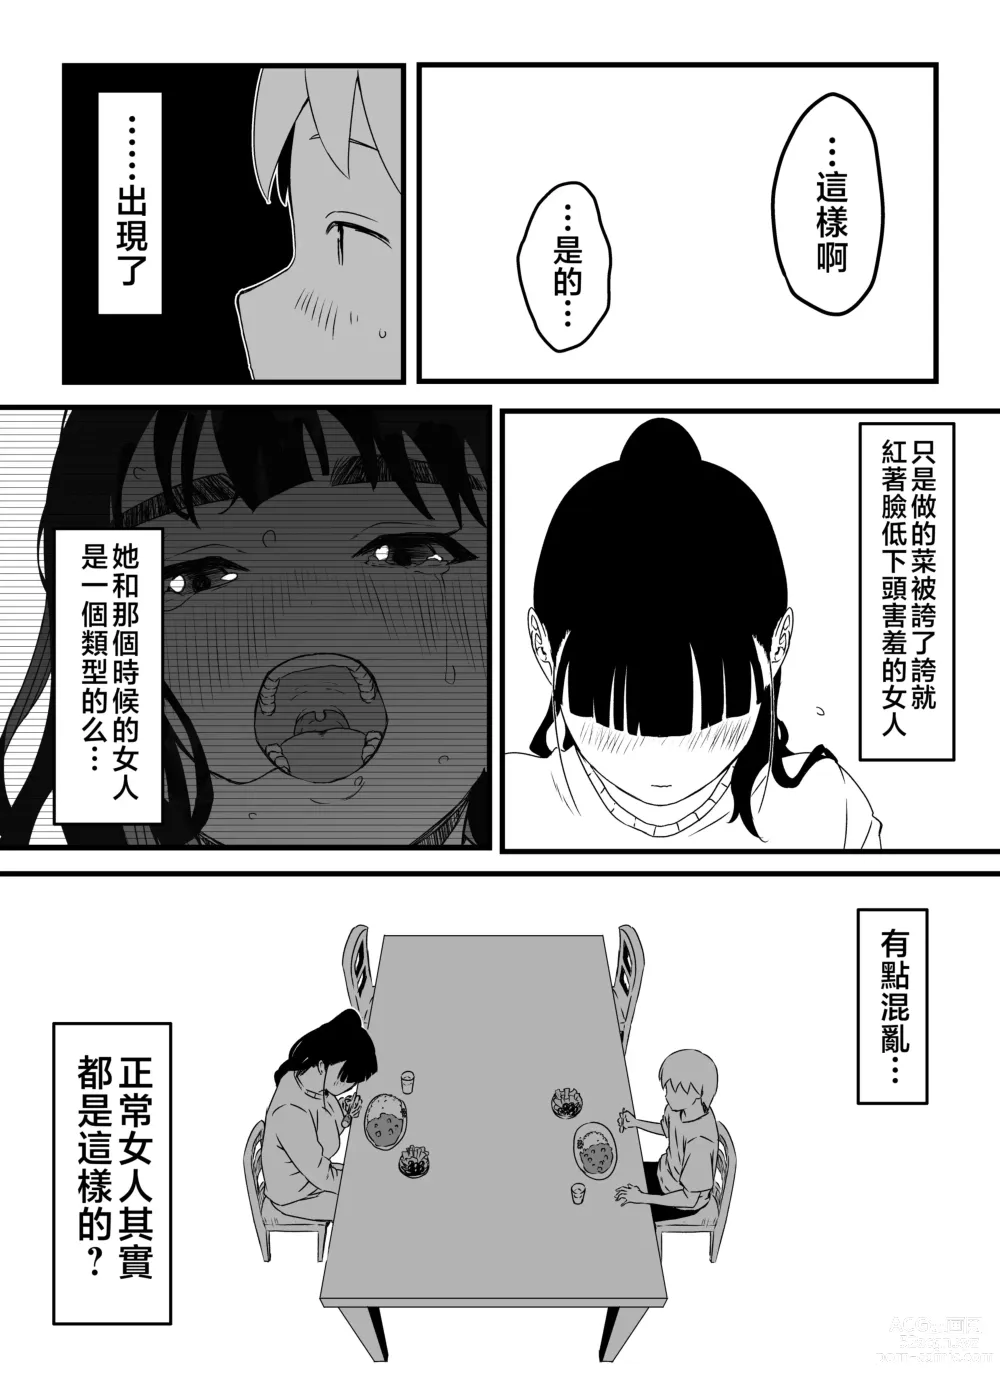 Page 7 of doujinshi Giri no Ane to no 7-kakan Seikatsu - 3